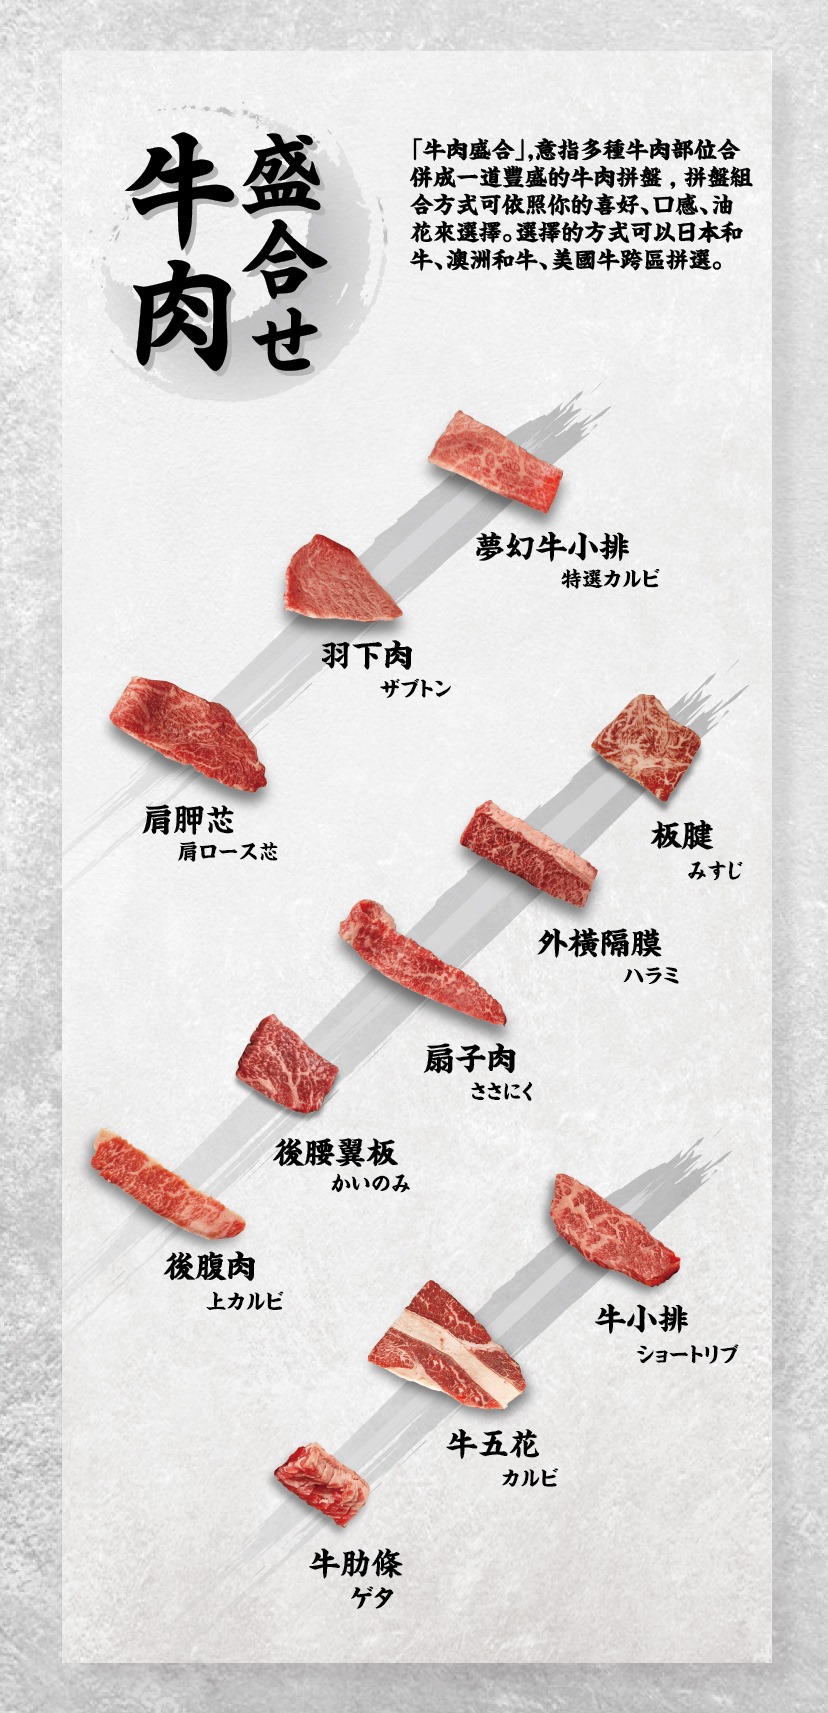 上吉燒肉-菜單-牛肉盛合